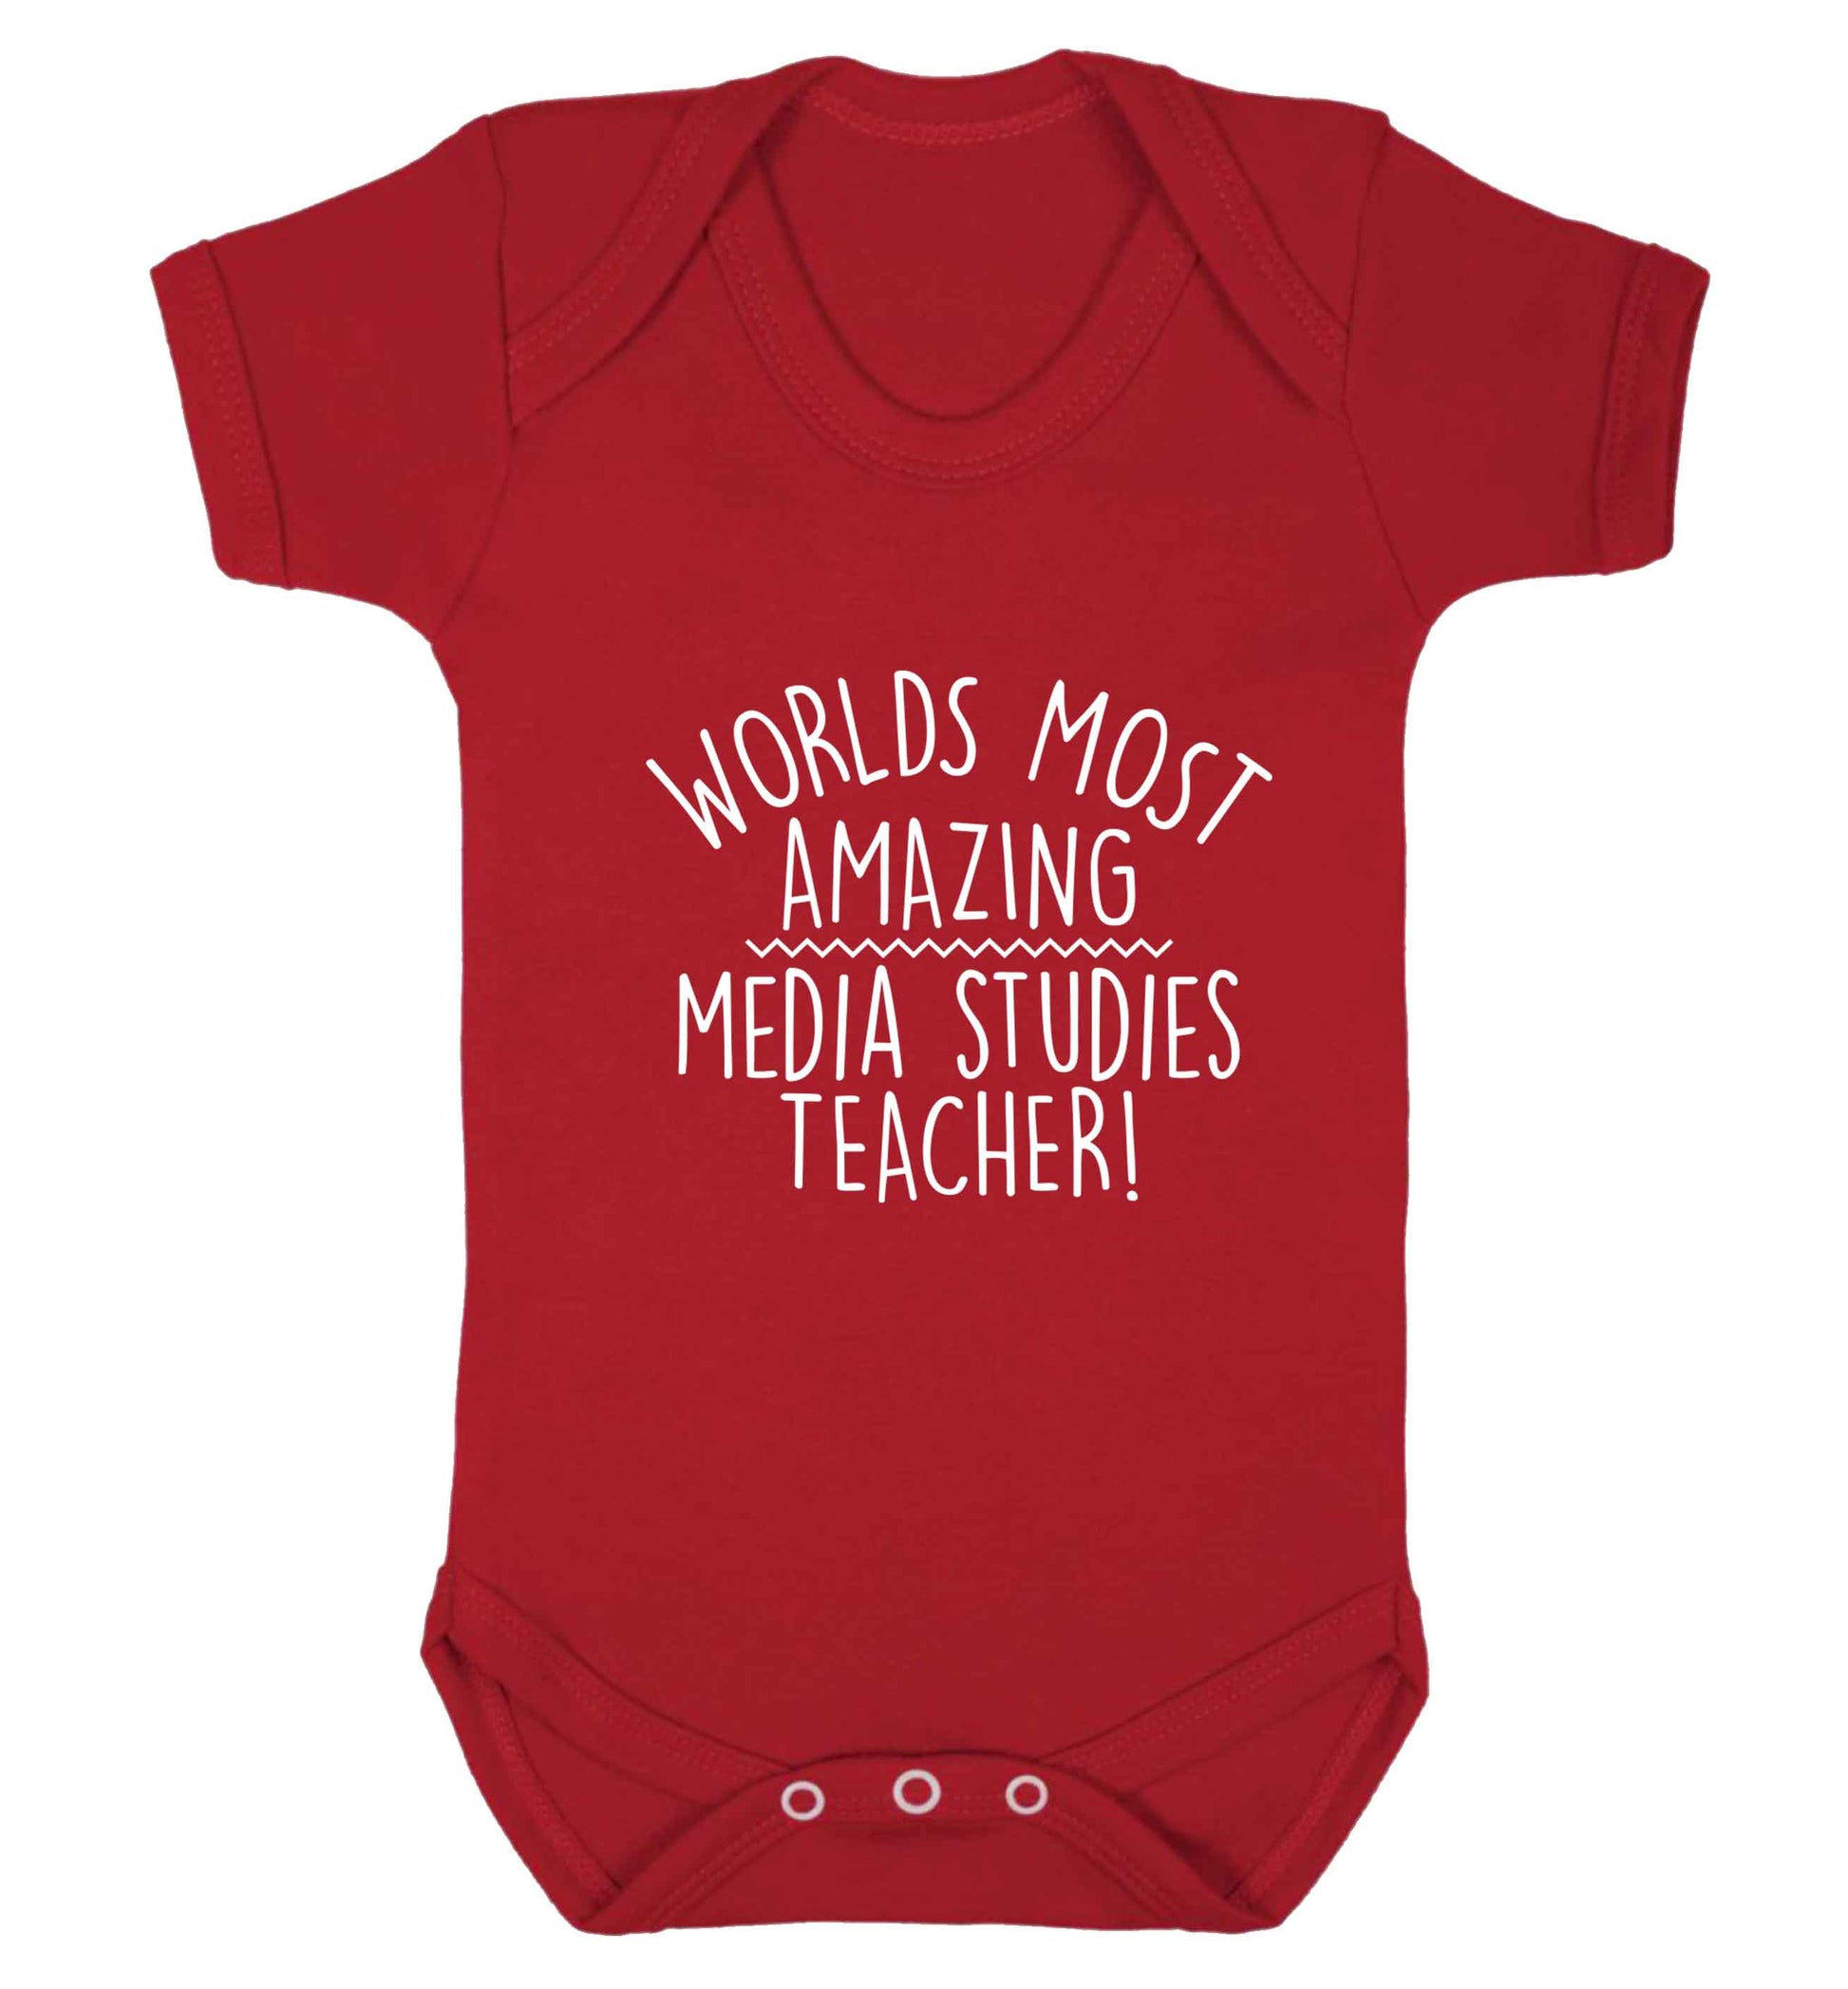 Worlds most amazing media studies teacher baby vest red 18-24 months